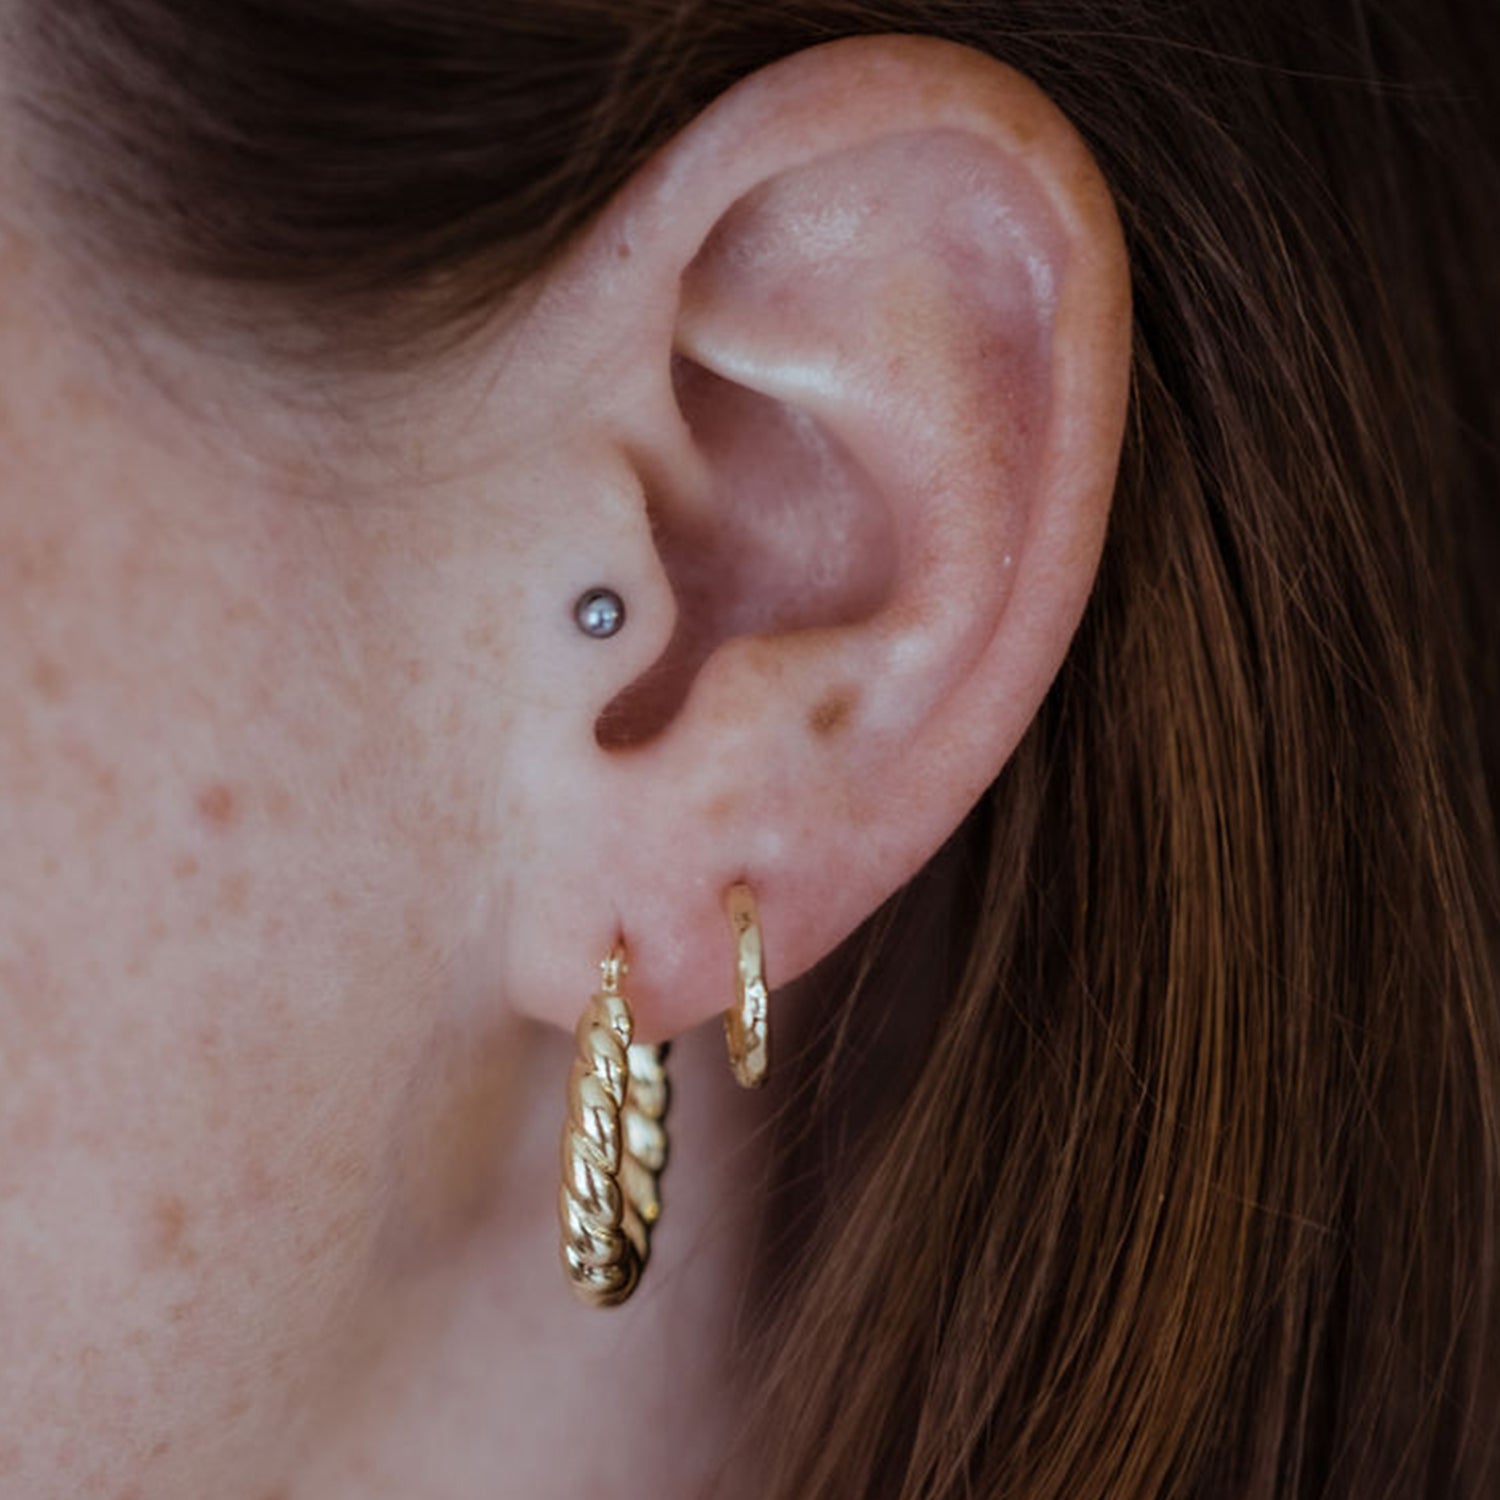 Plot Twist Hoop Earrings in 14ct Gold Vermeil